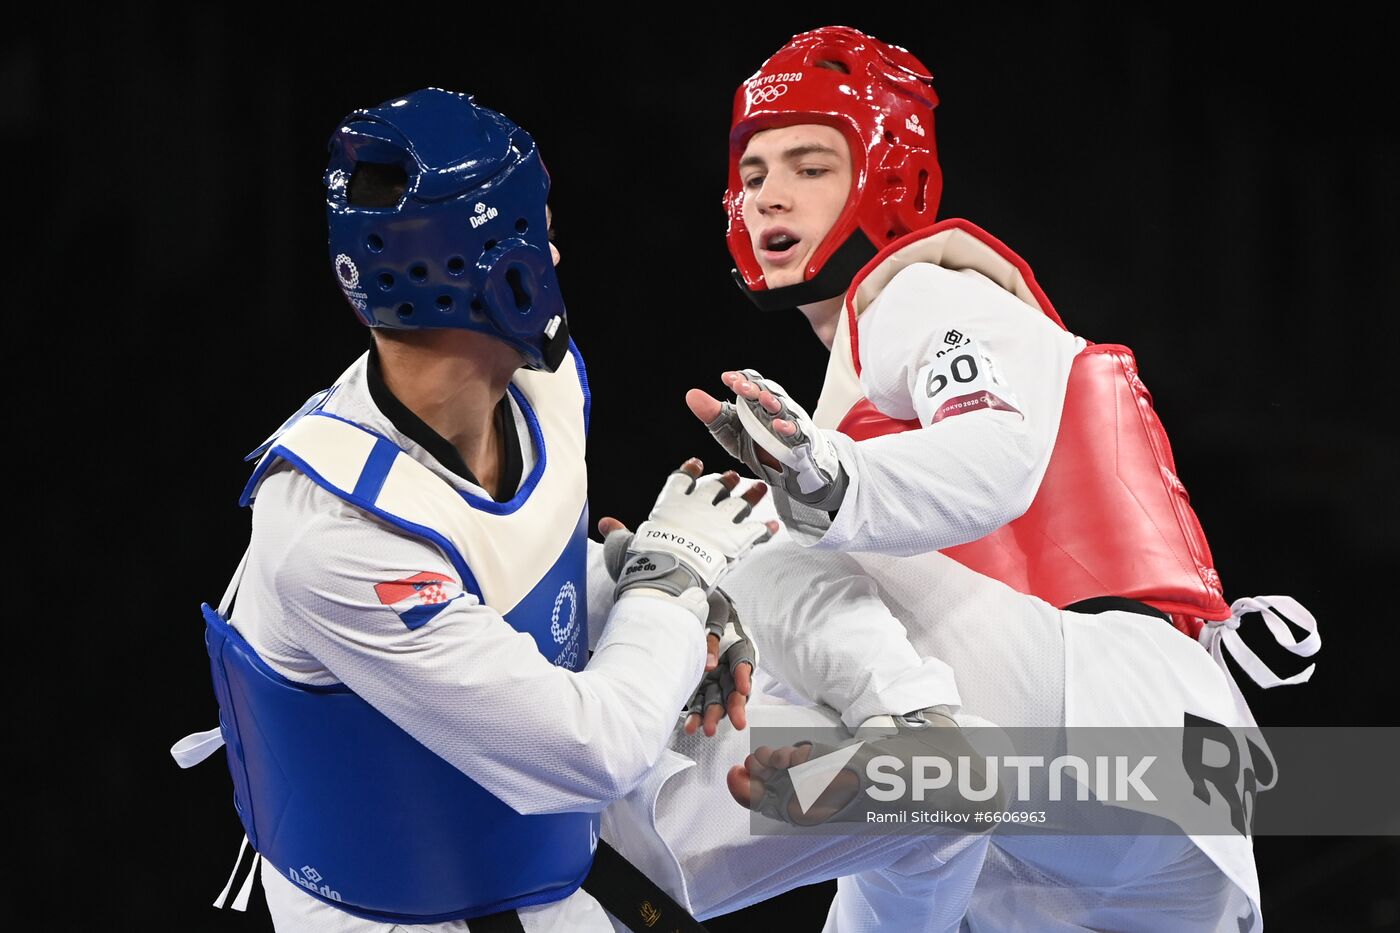 Japan Olympics 2020 Taekwondo Men